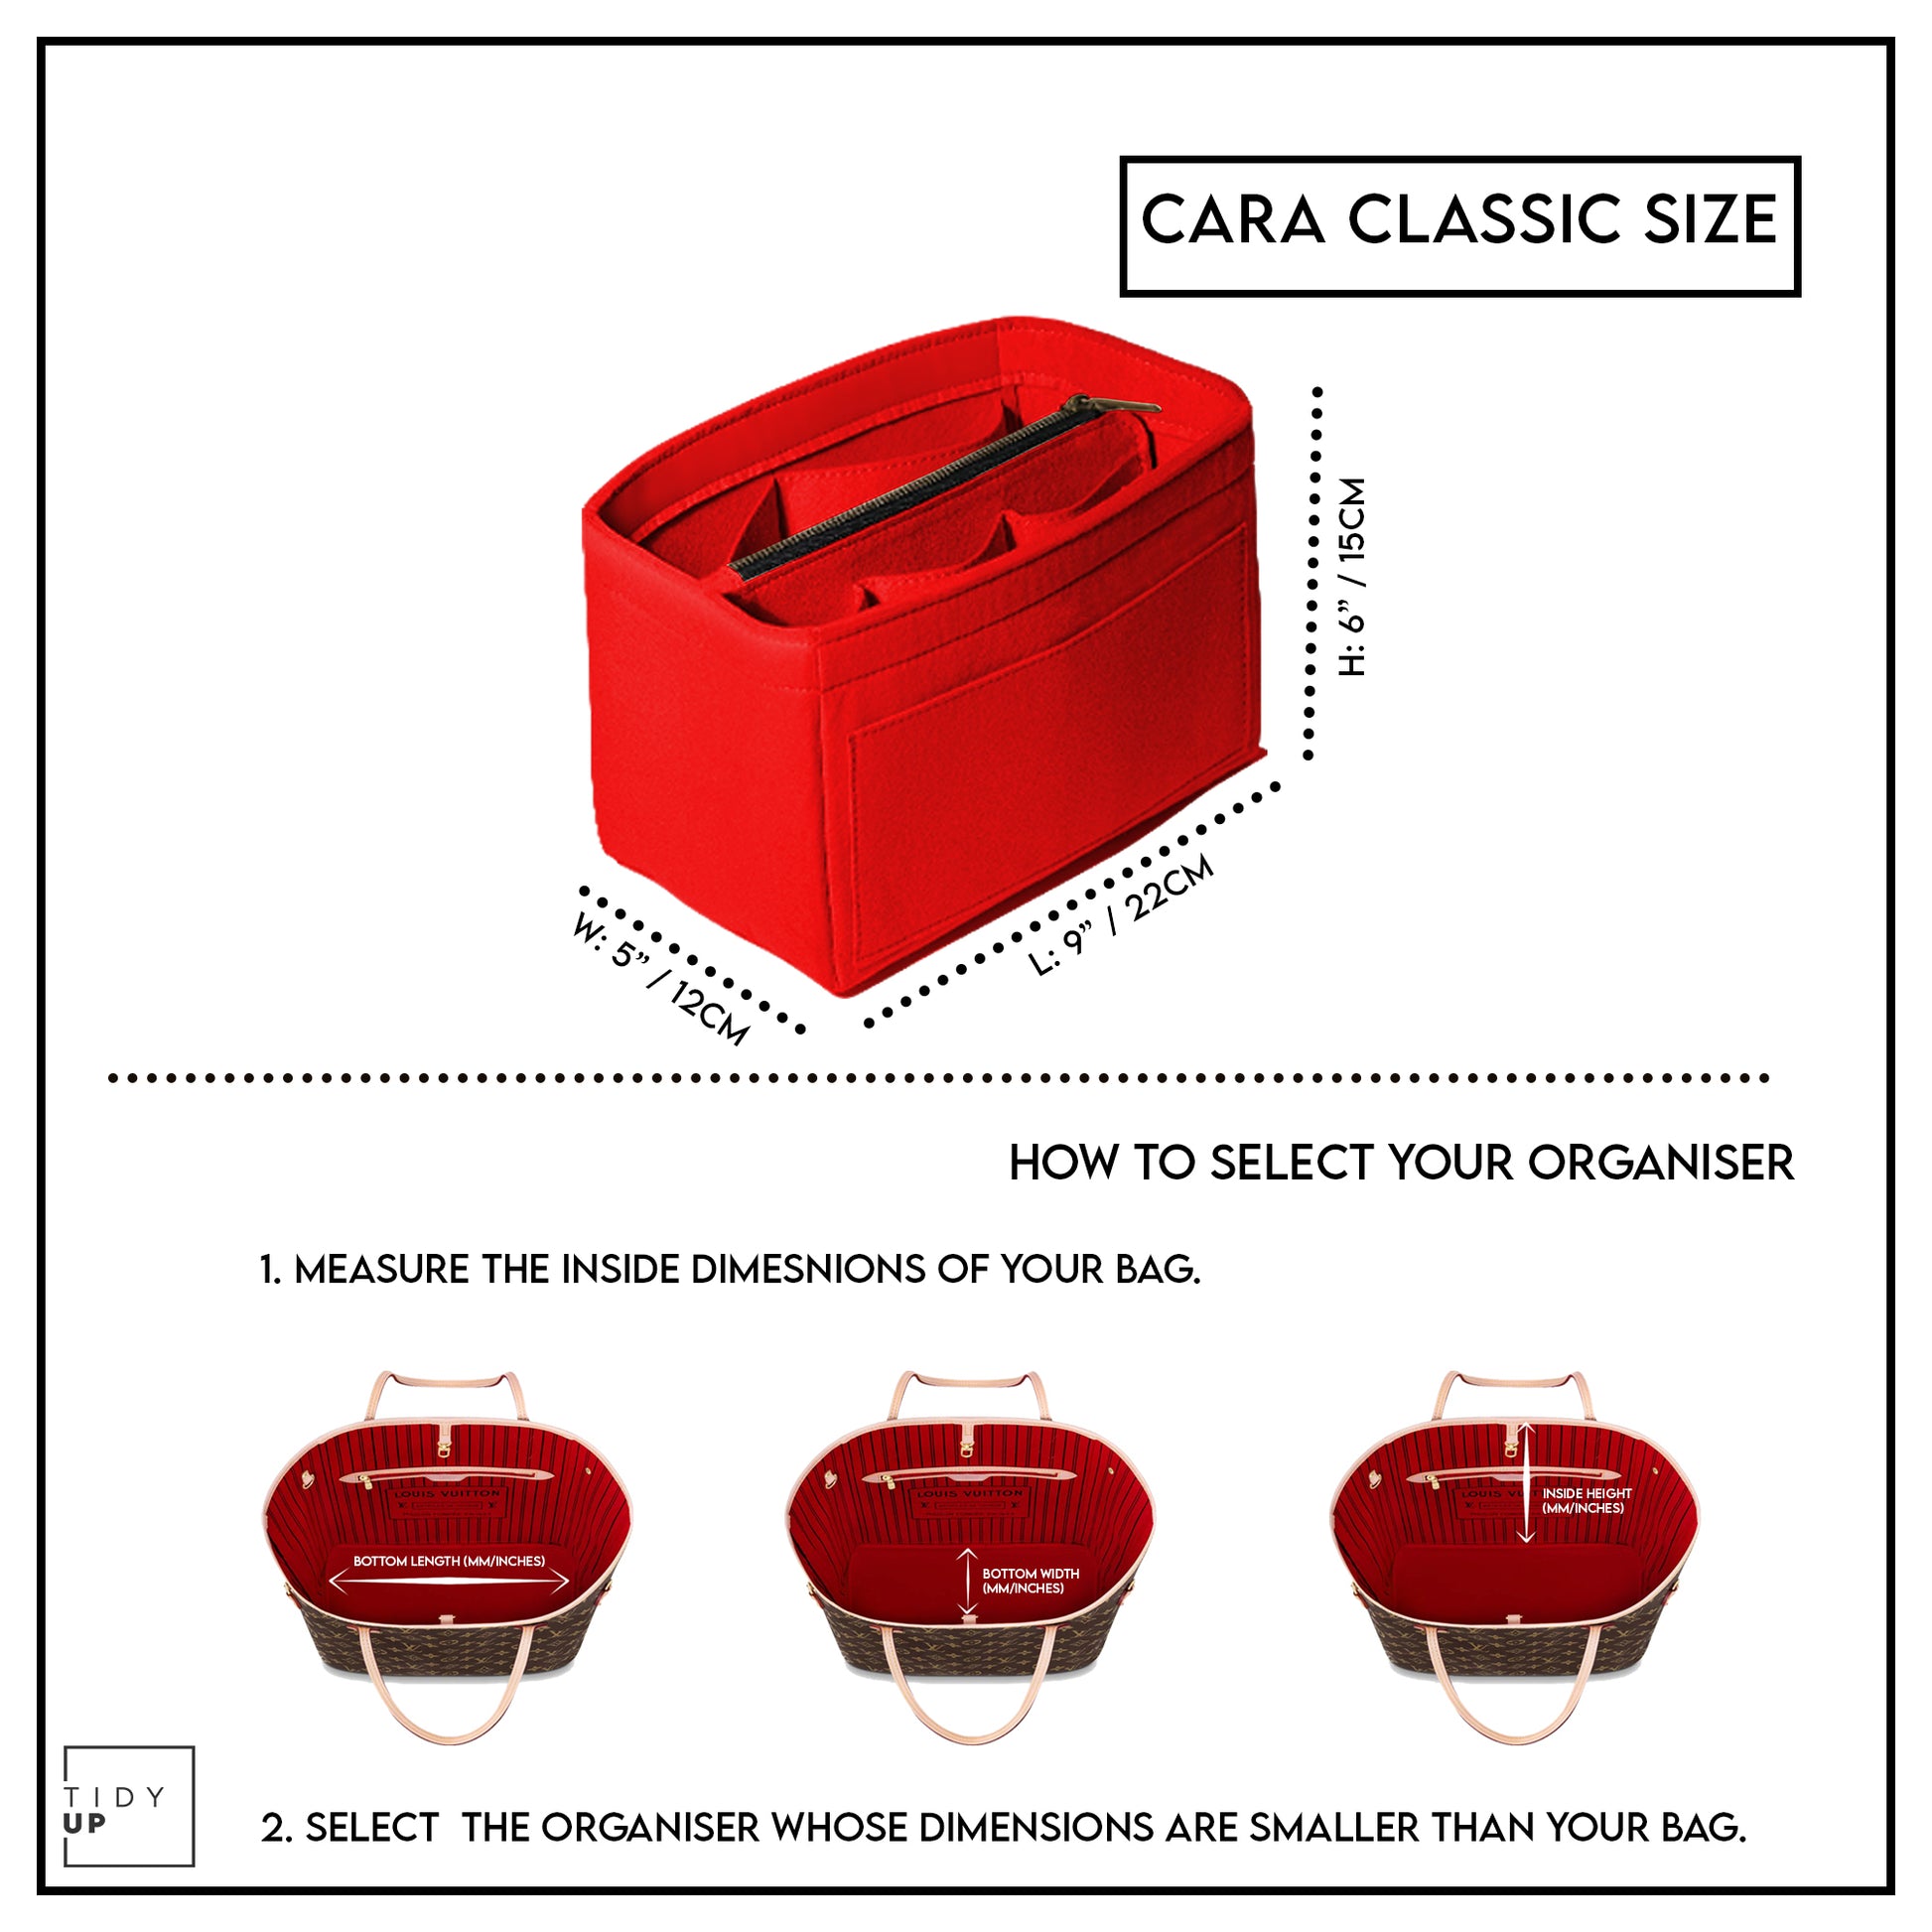 TidyUp Cara Classic Red Bag Organiser Dimensions